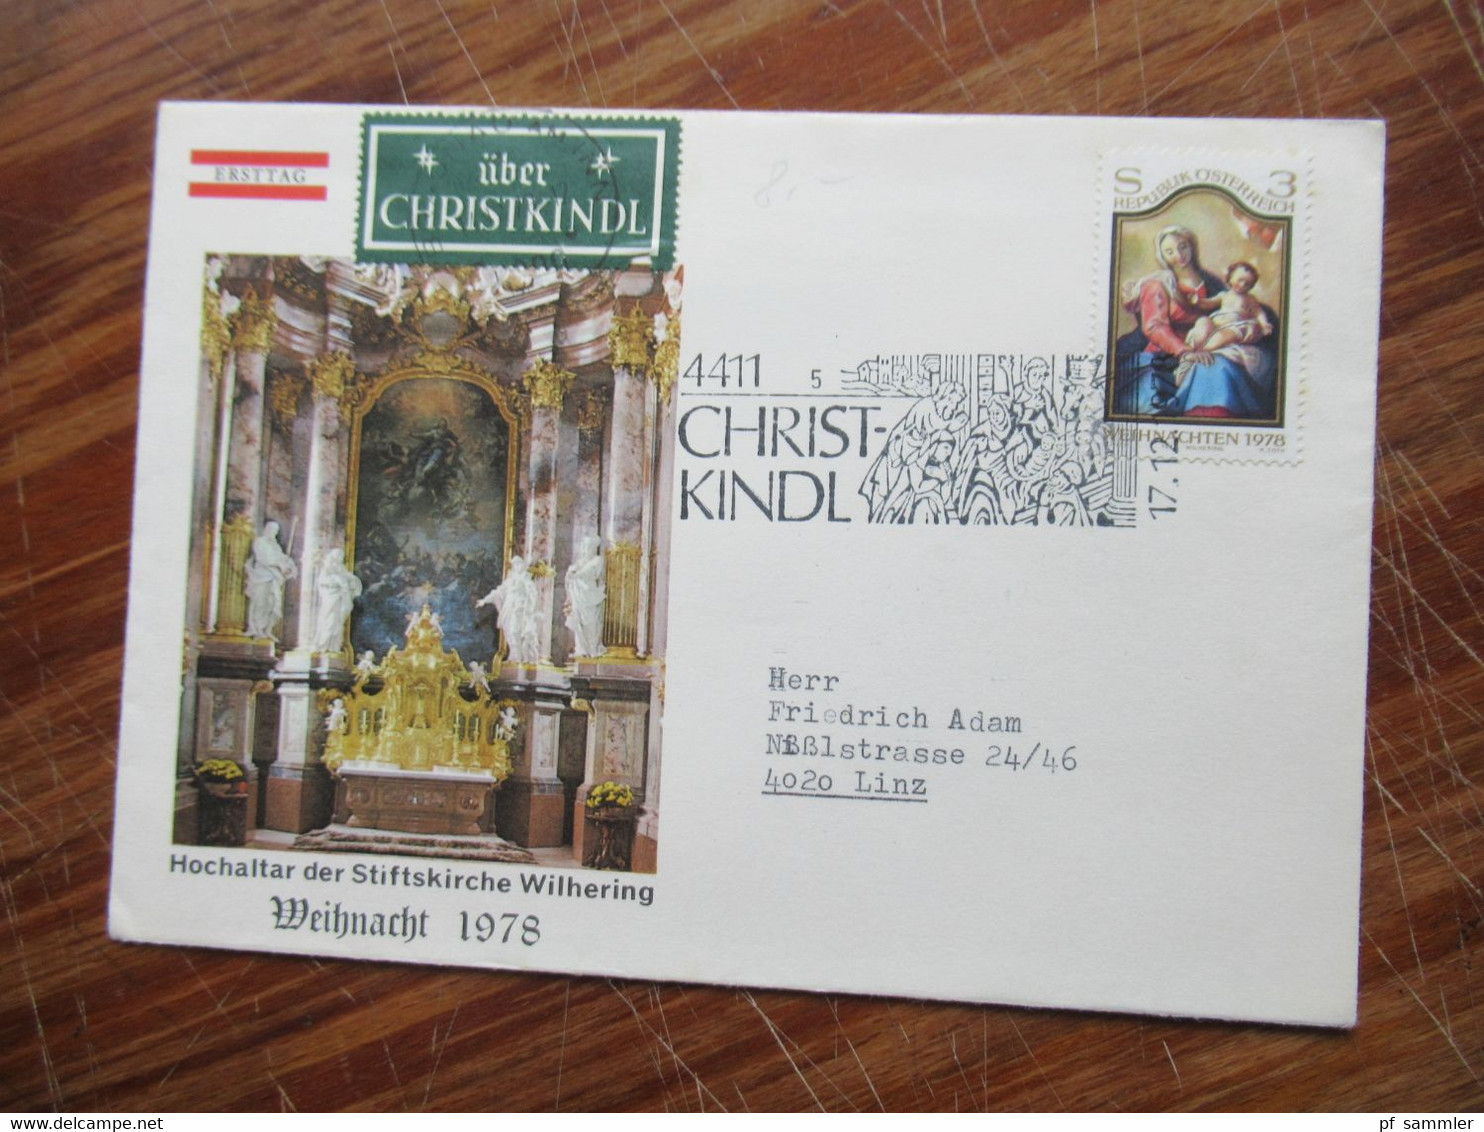 Österreich 1963 - 1993 Christkindl Belege mit verschiedenen Stempeln und etlichen Leitzetteln Über Christkindl 57 Belege